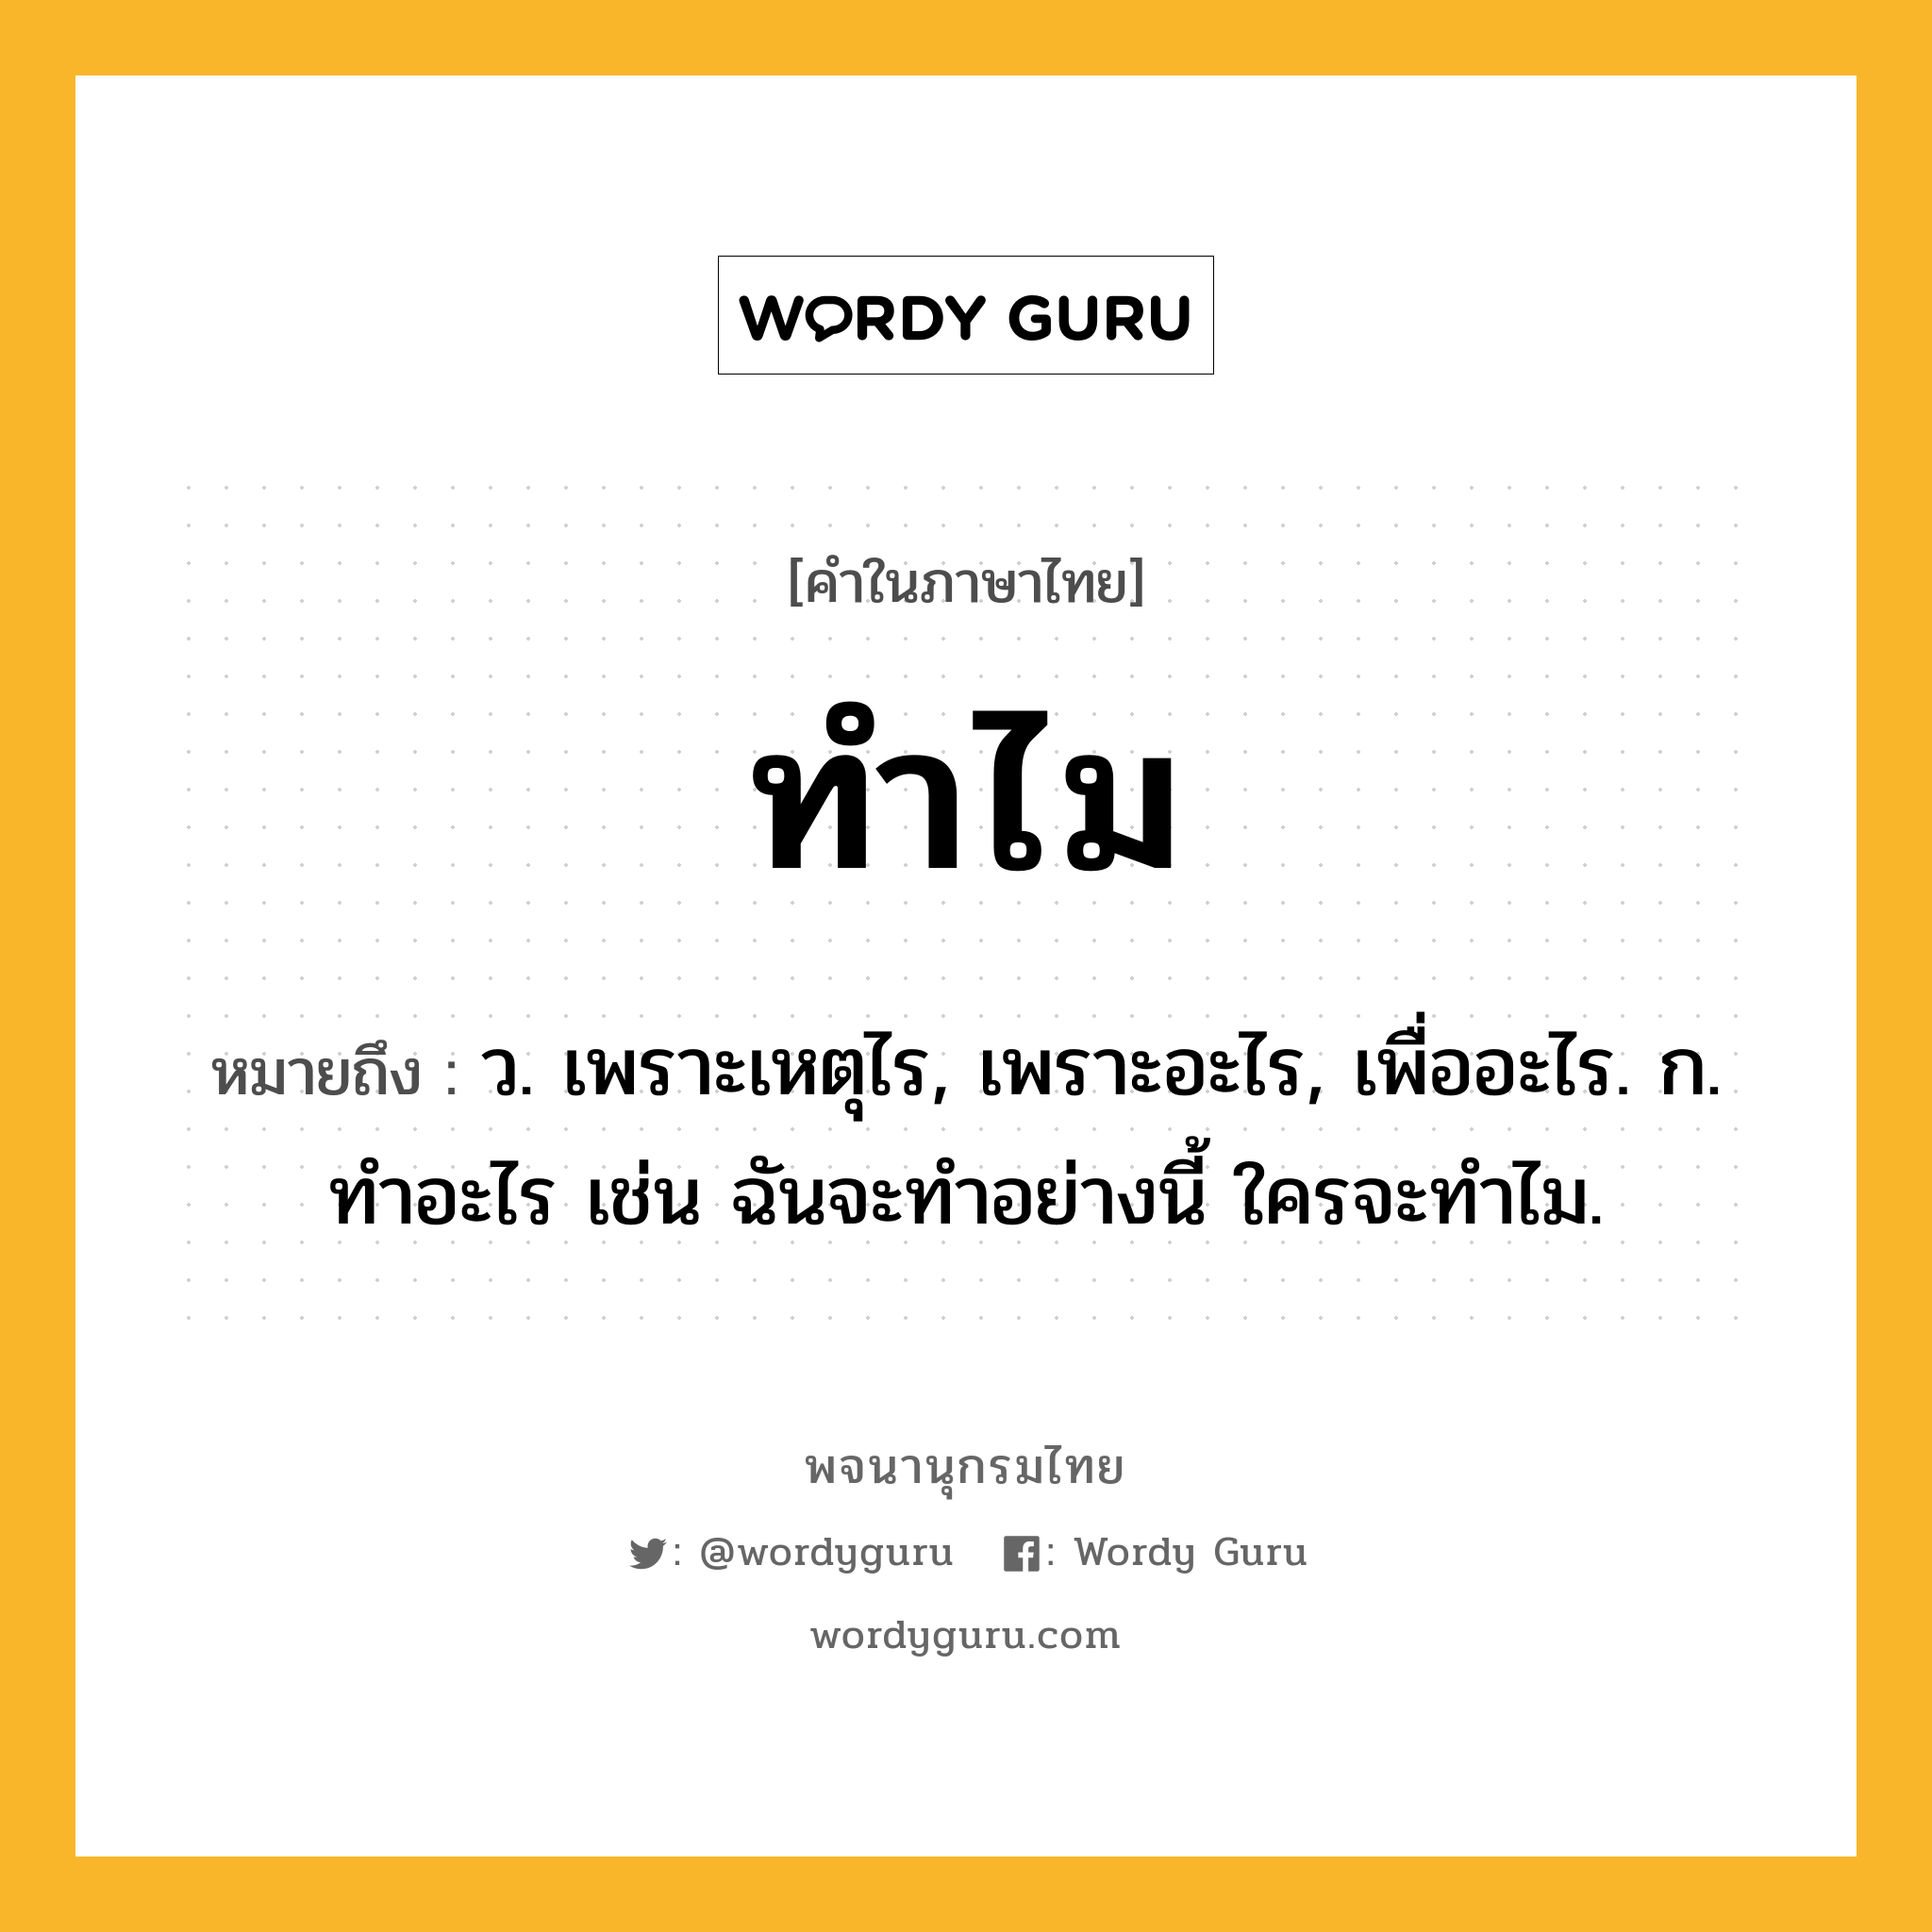 ทำไม หมายถึงอะไร?, คำในภาษาไทย ทำไม หมายถึง ว. เพราะเหตุไร, เพราะอะไร, เพื่ออะไร. ก. ทําอะไร เช่น ฉันจะทําอย่างนี้ ใครจะทําไม.